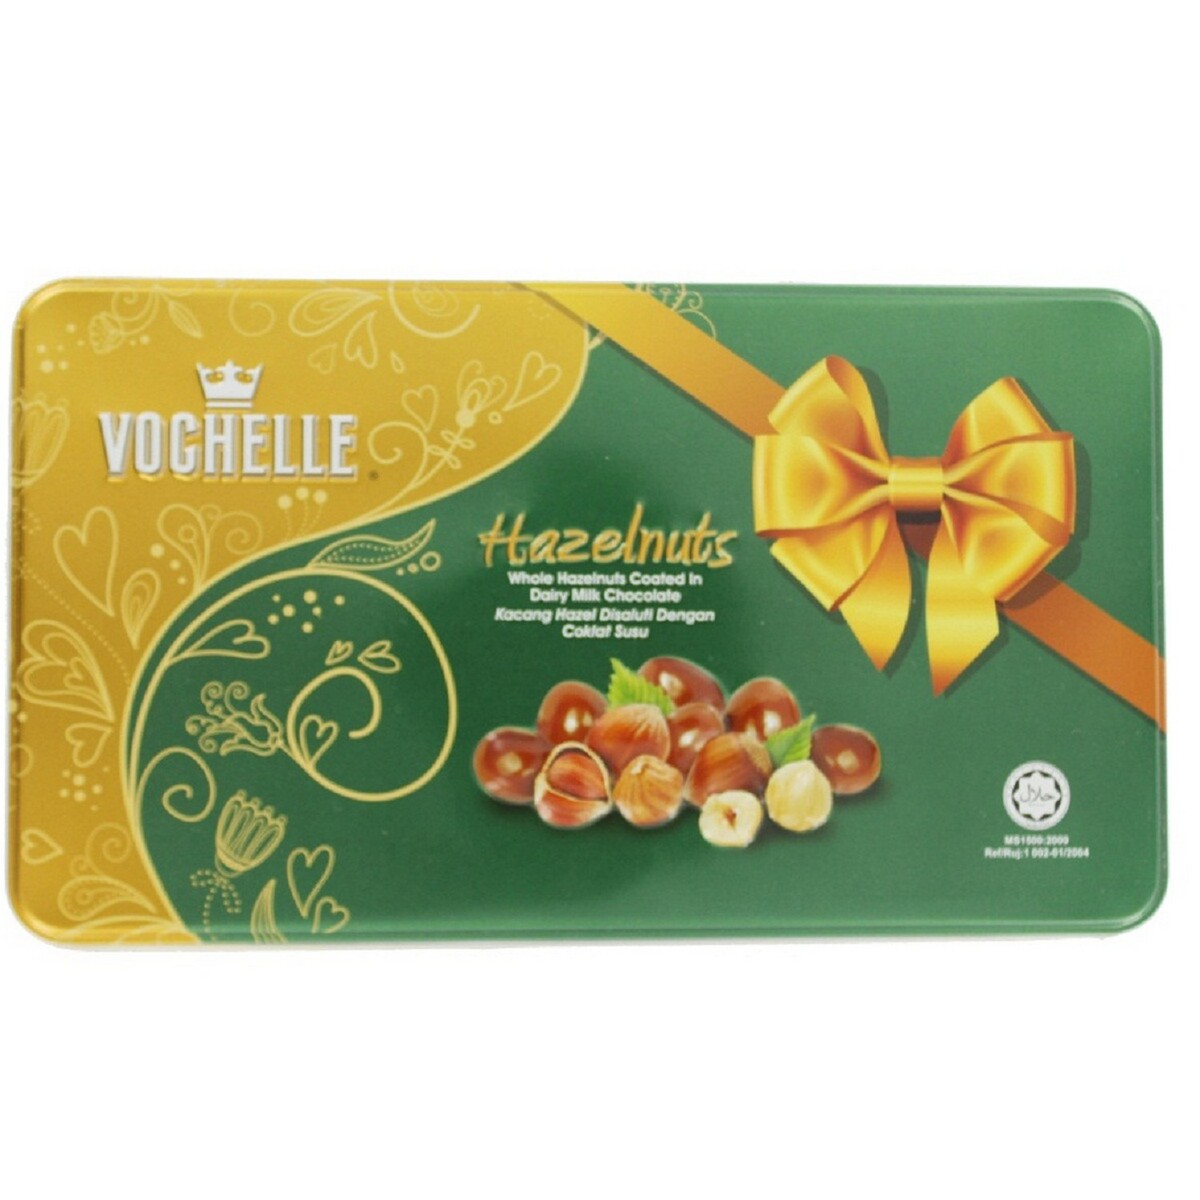 Vochelle Hazelnut Chocolate Assorted 180g